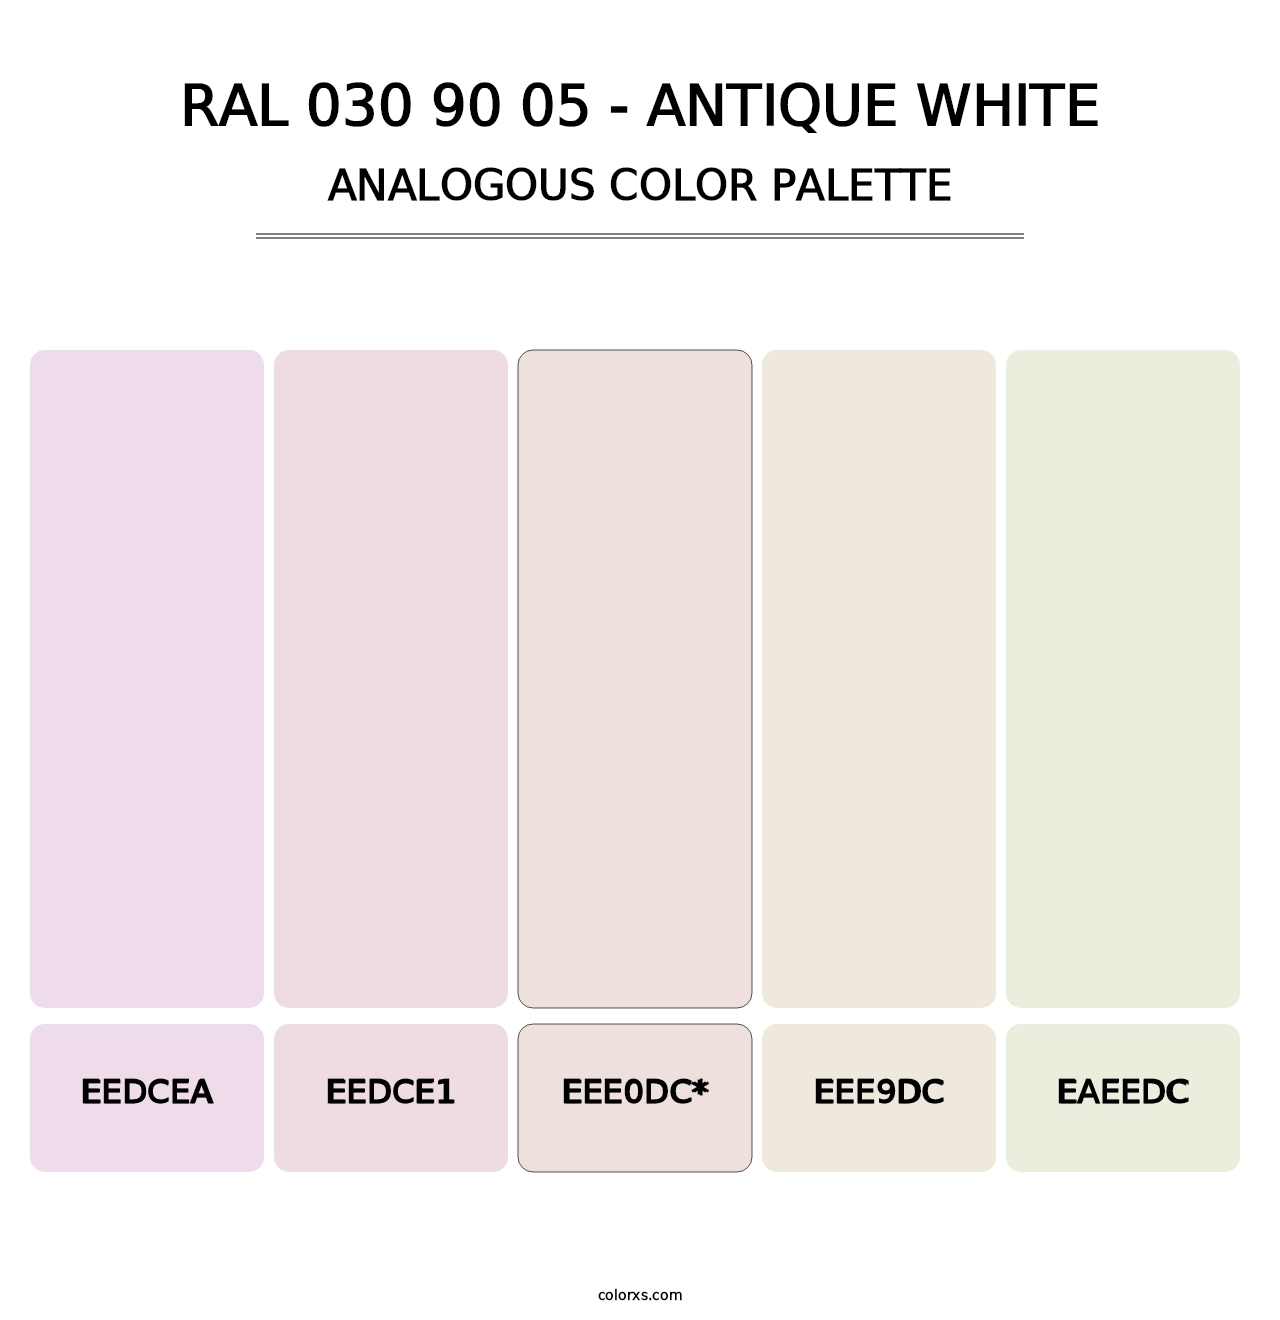 RAL 030 90 05 - Antique White - Analogous Color Palette